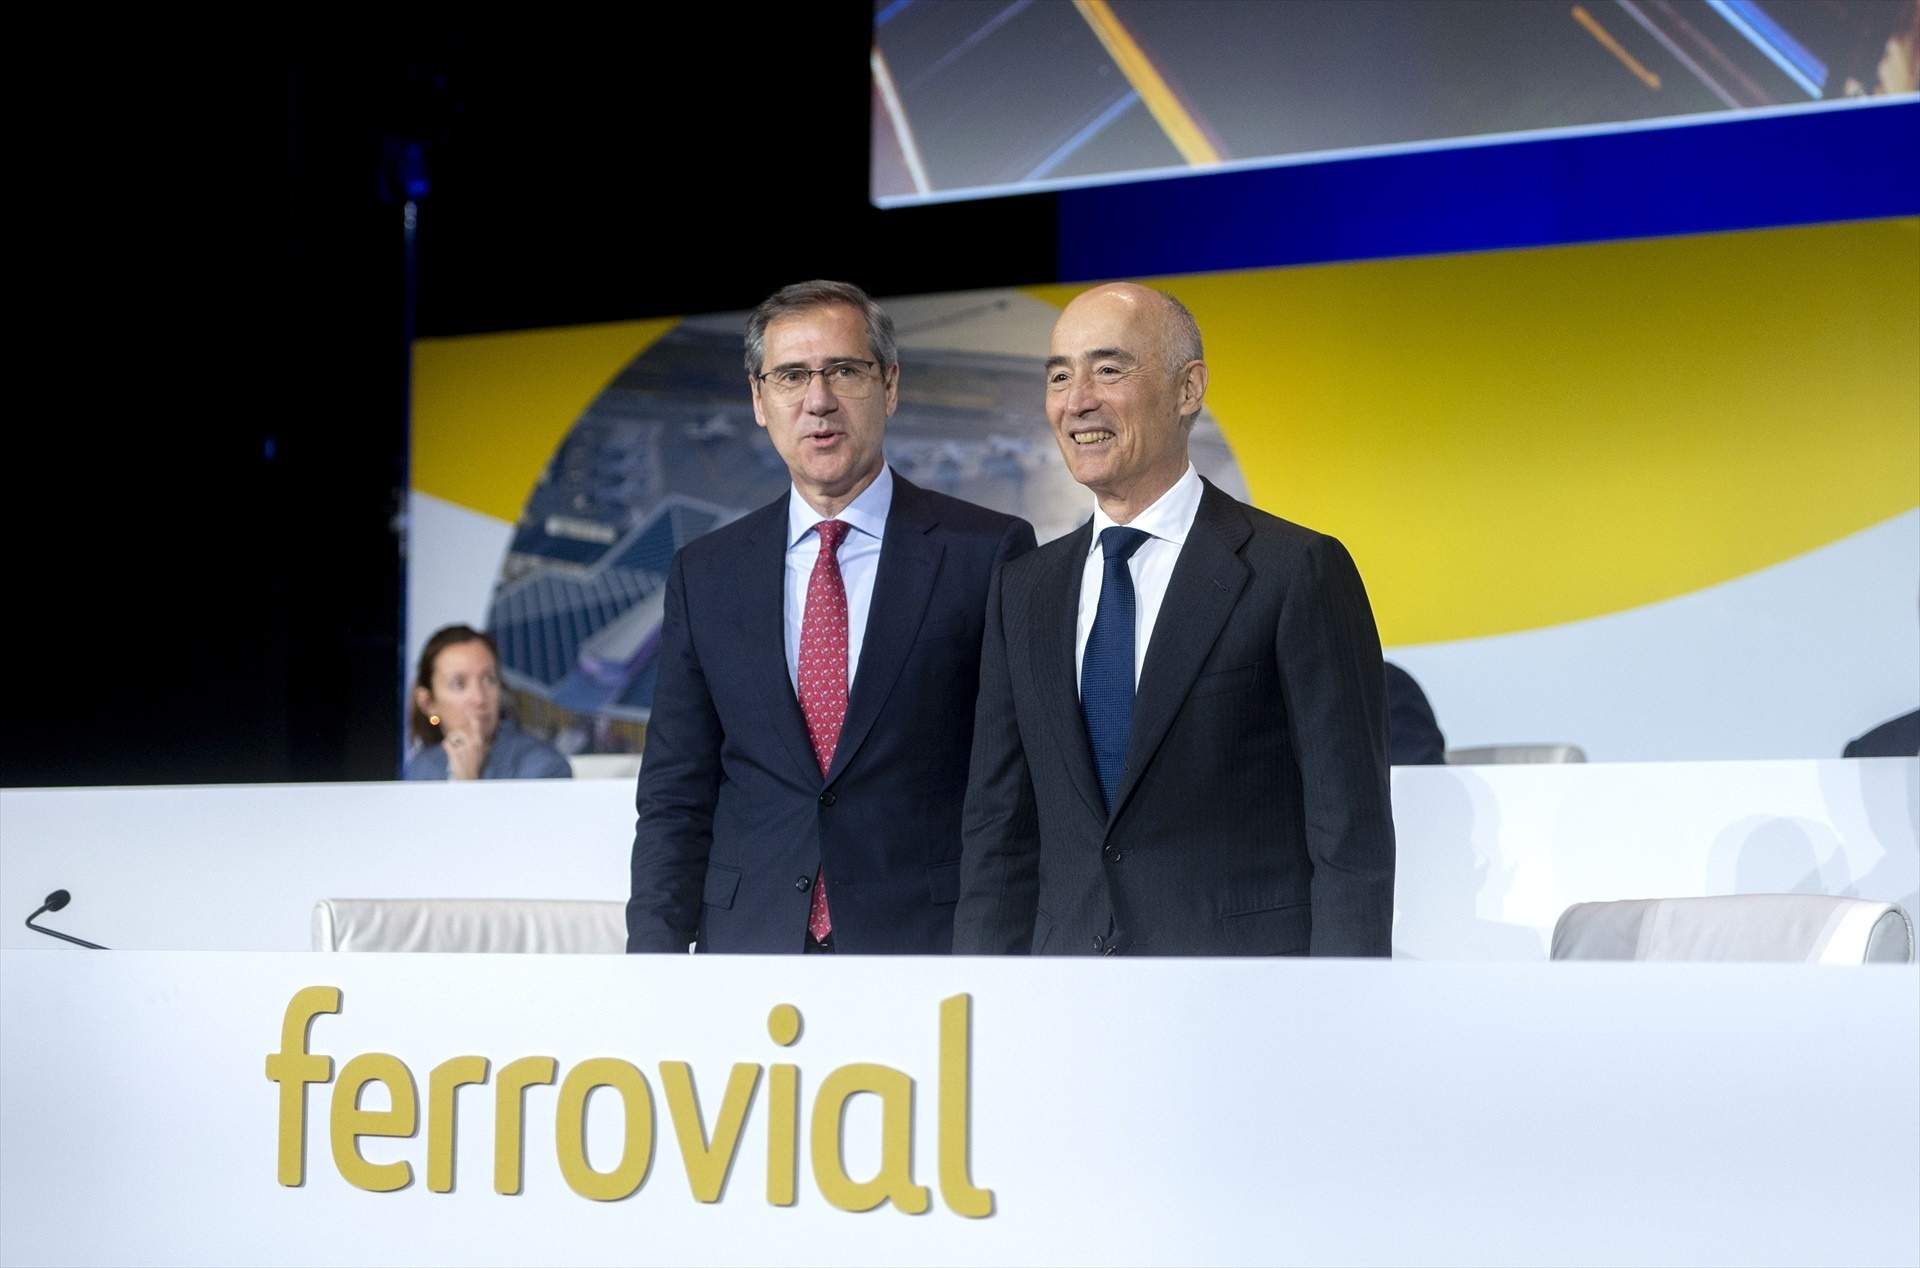 Ferrovial prevé debutar en el Nasdaq el 9 de mayo tras acabar el proceso de revisión regulatoria